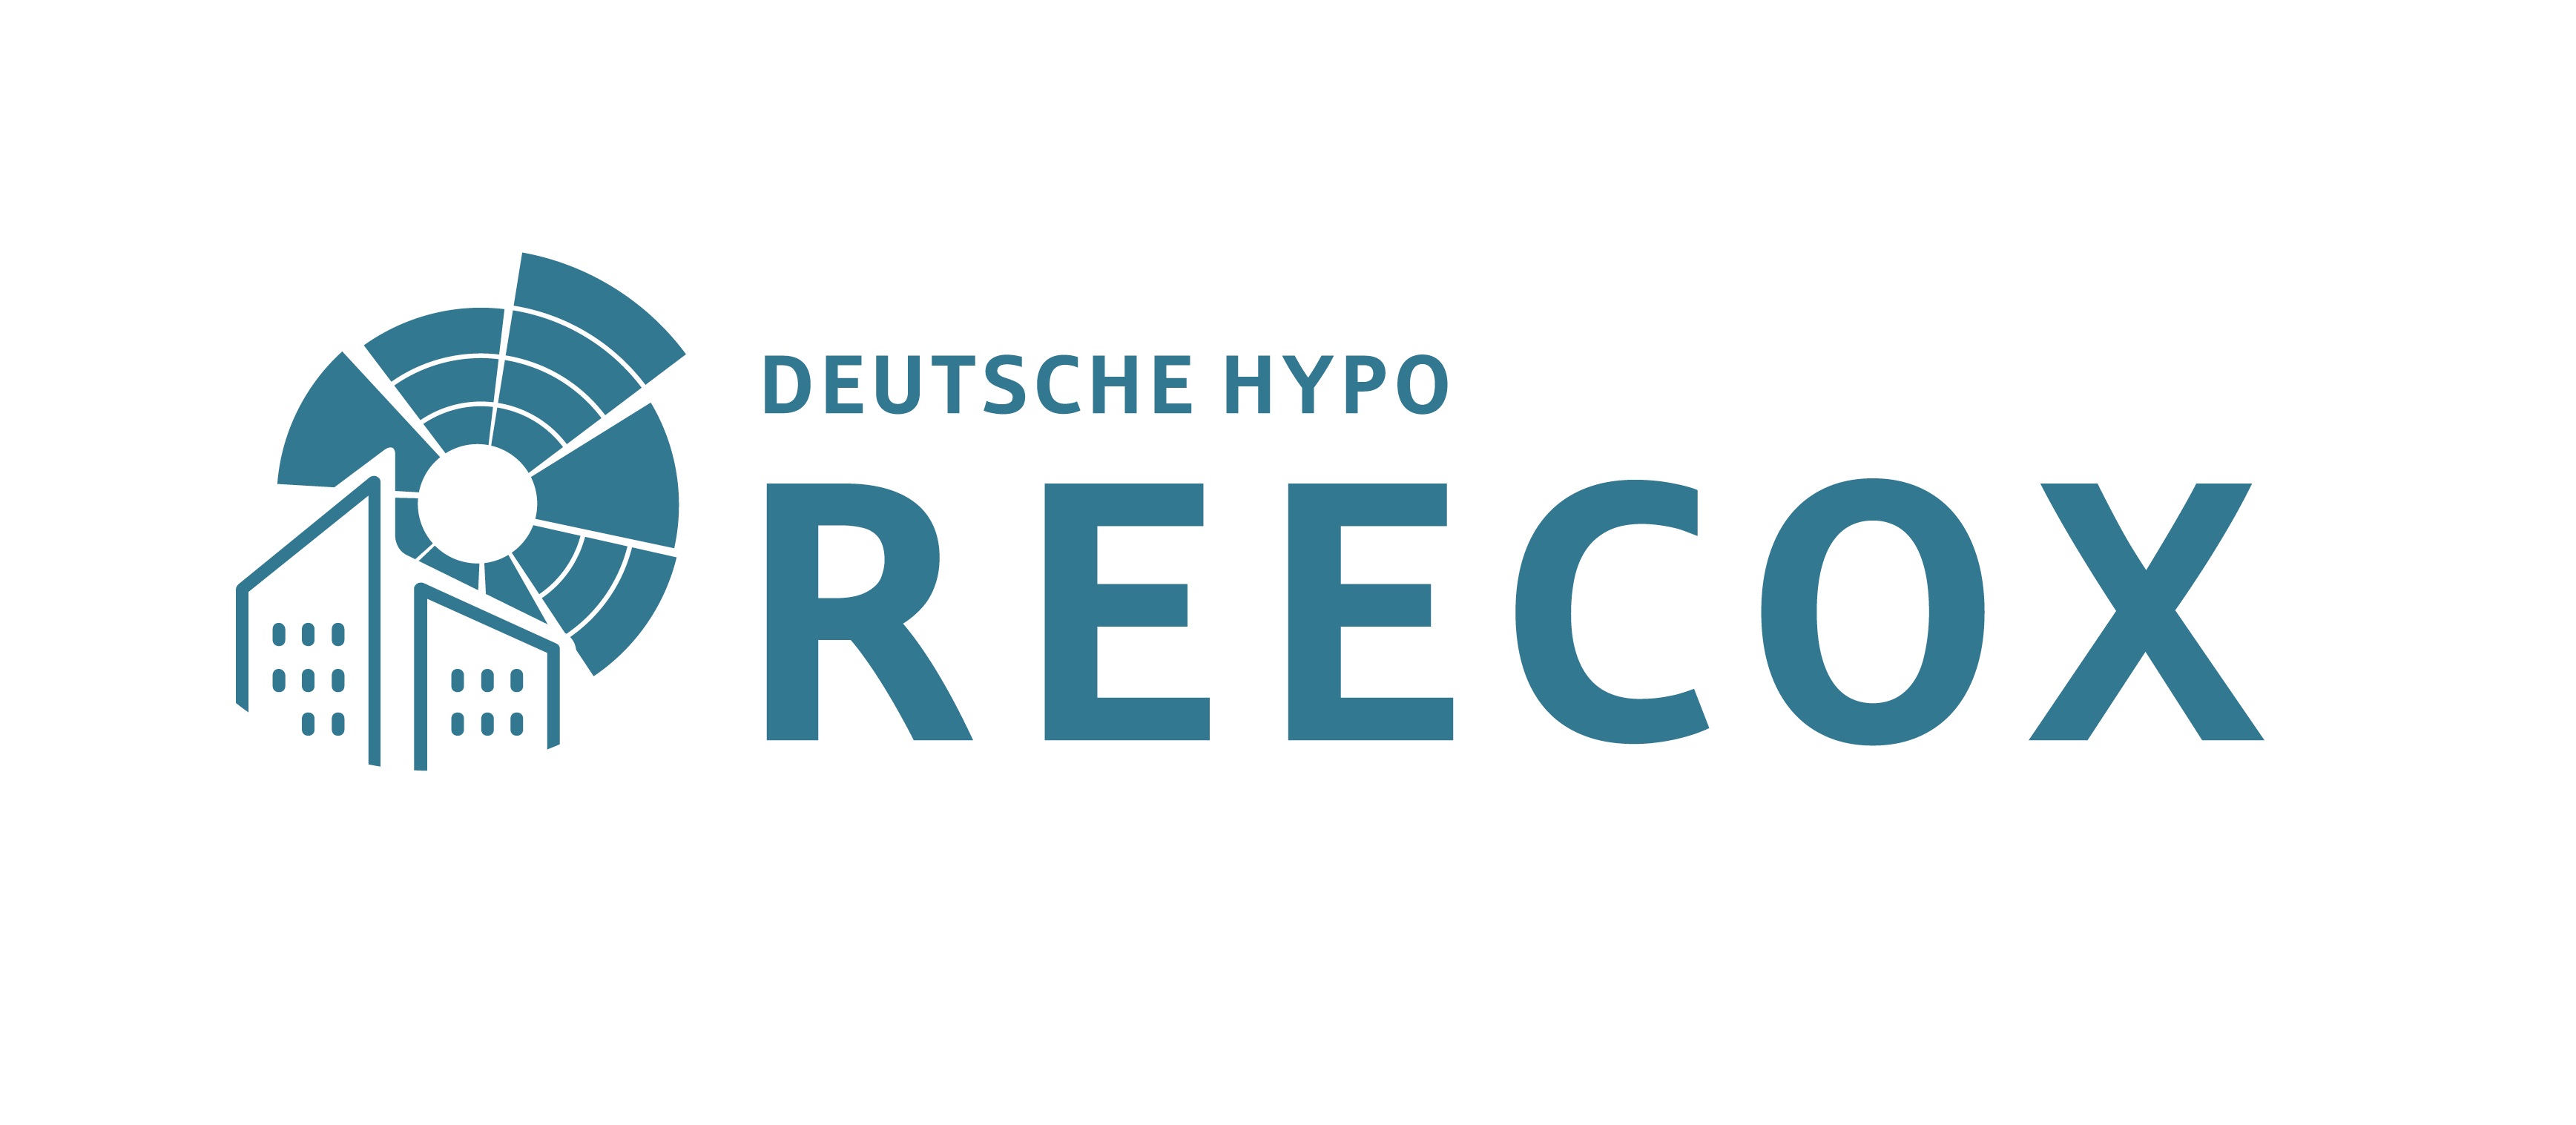 Deutsche Hypo Reecox Immobilienkonjunktur Deutschlands Sinkt Um 2 2 Presseportal